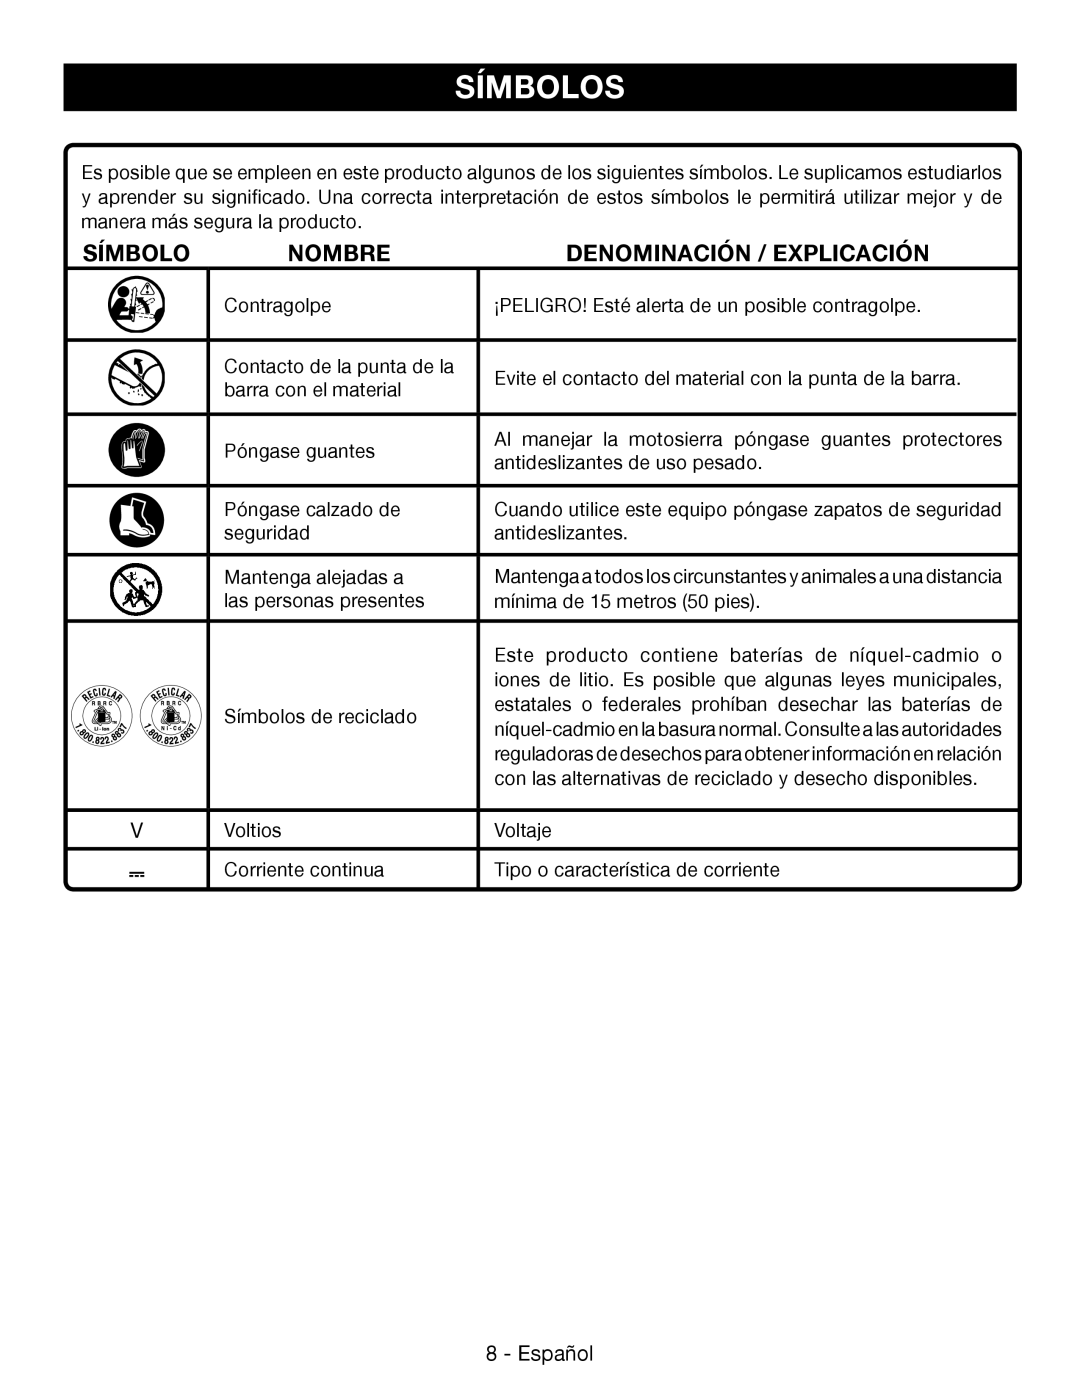 Ryobi P545 manuel dutilisation Símbolos, Nombre, Denominación / Explicación, Español 